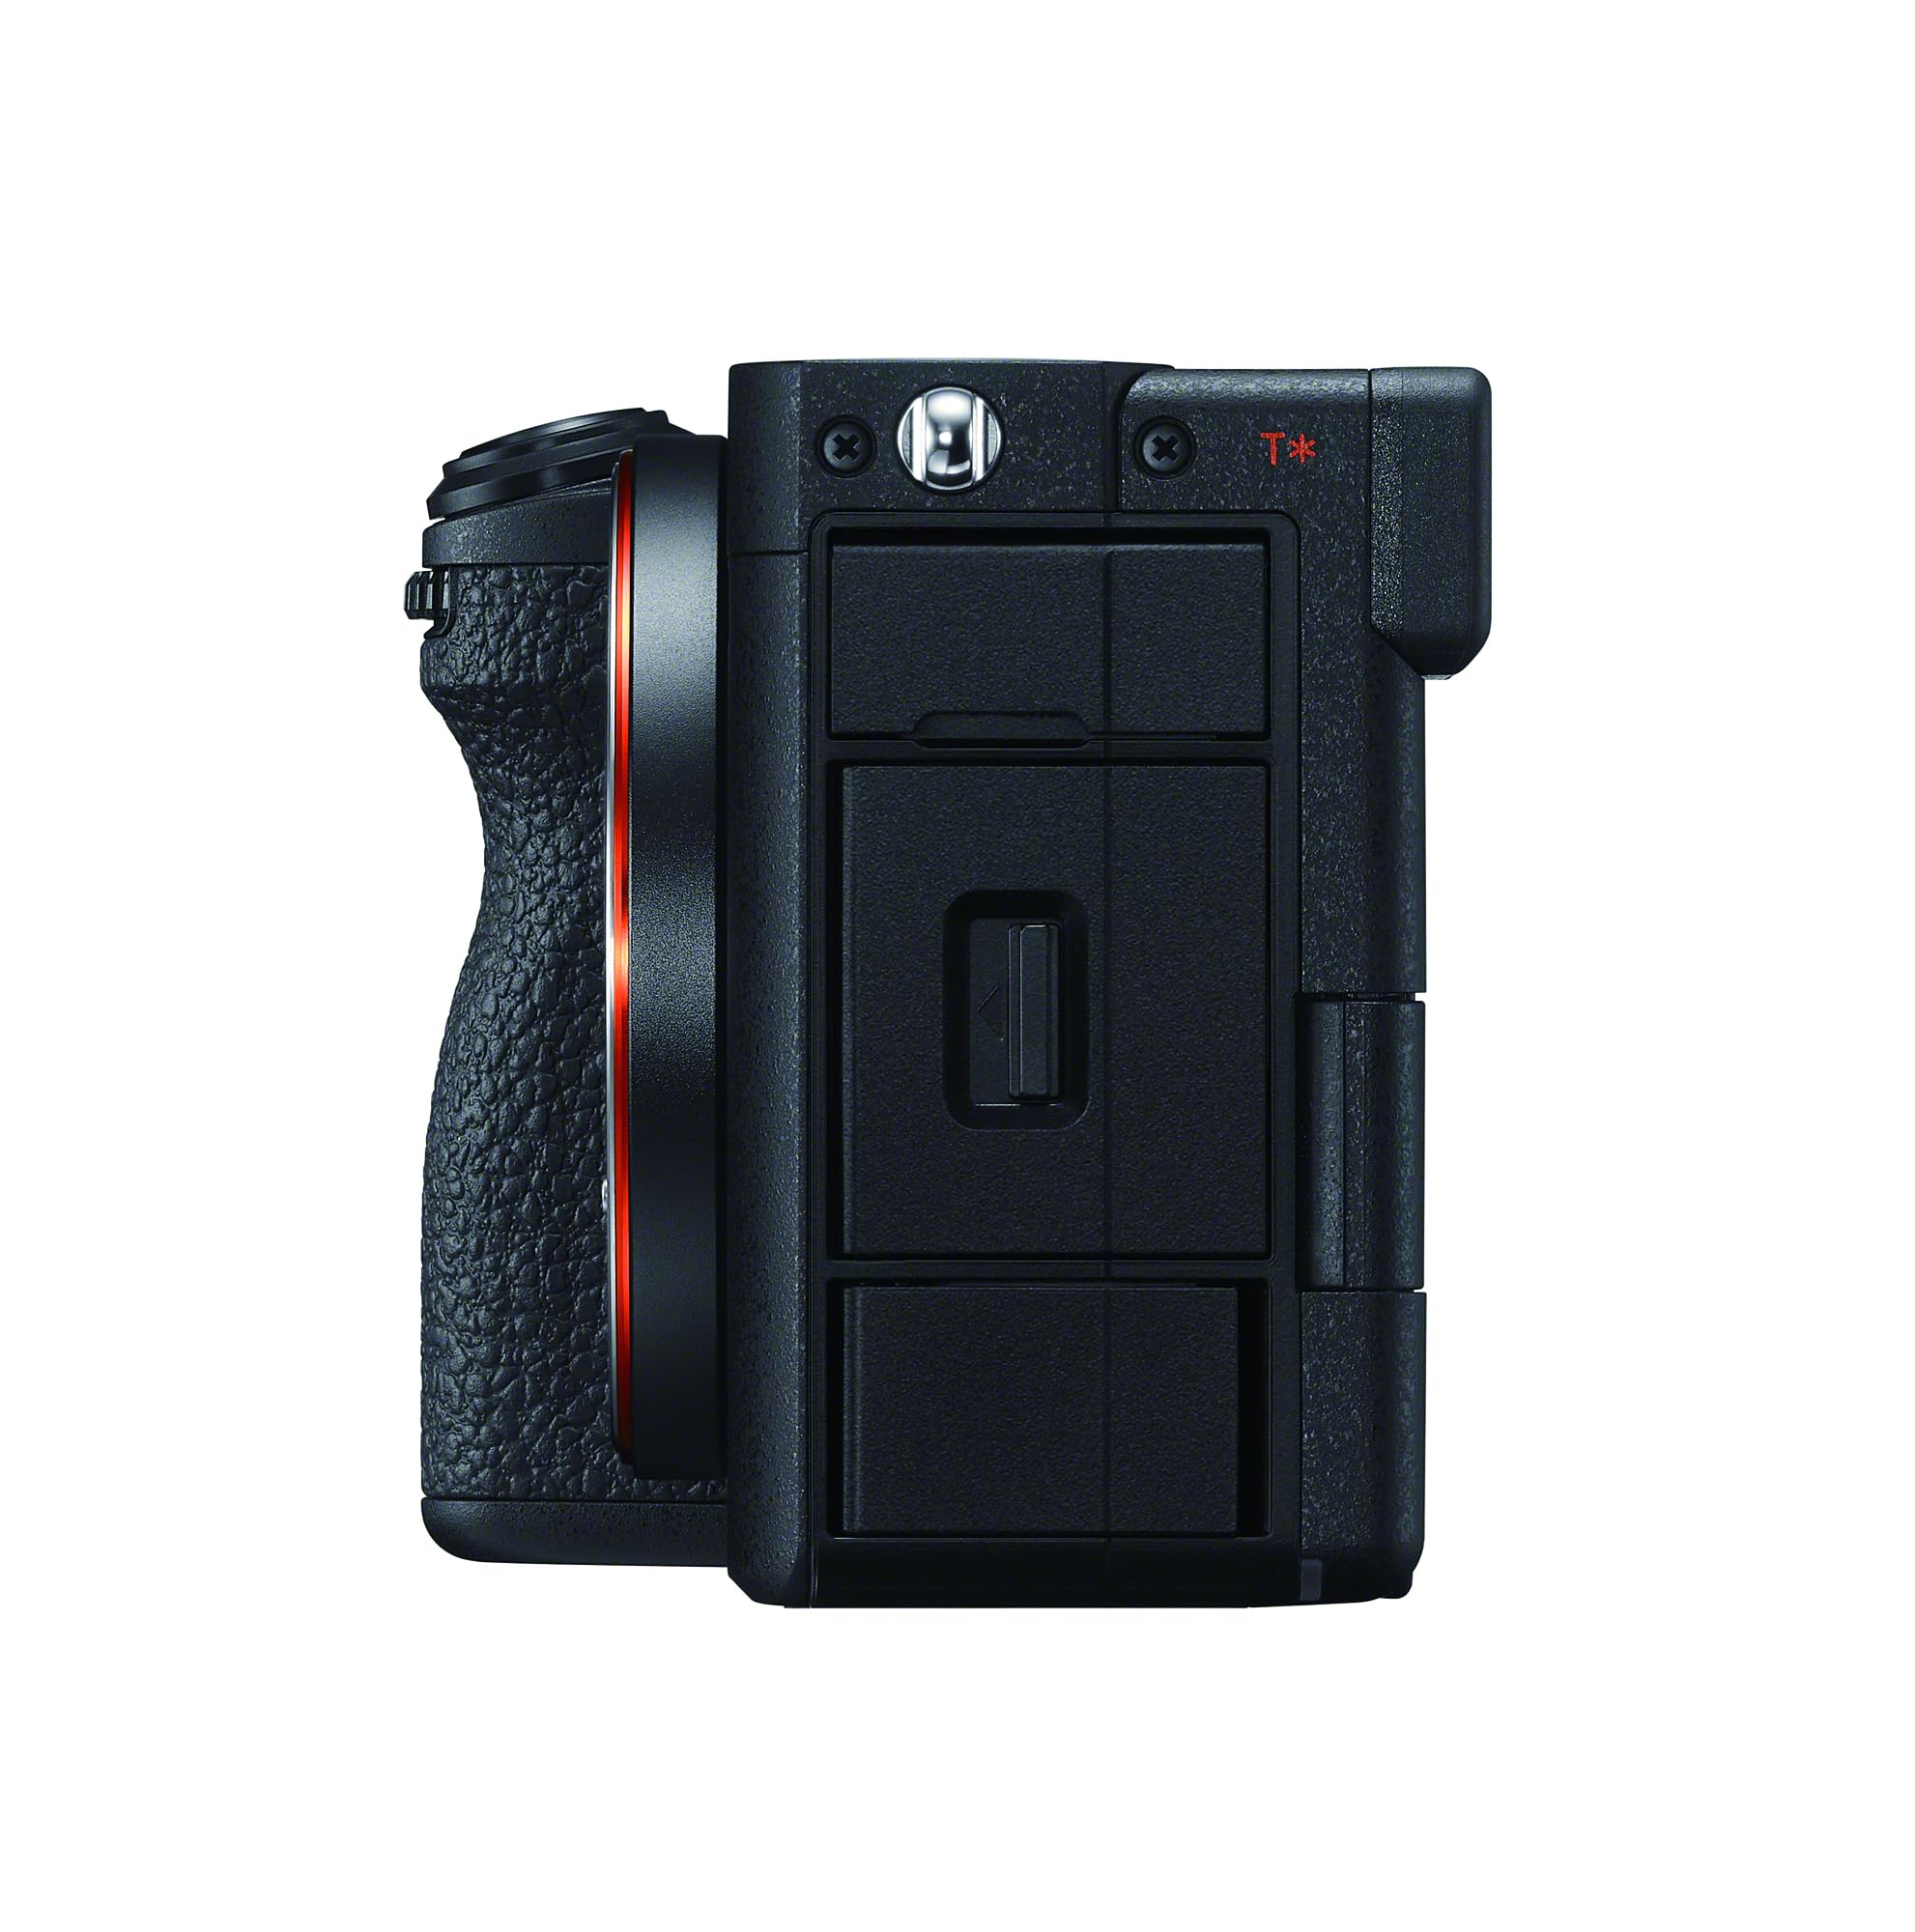 Sony Alpha 7CR Full-Frame Interchangeable Lens Hybrid Camera - Black